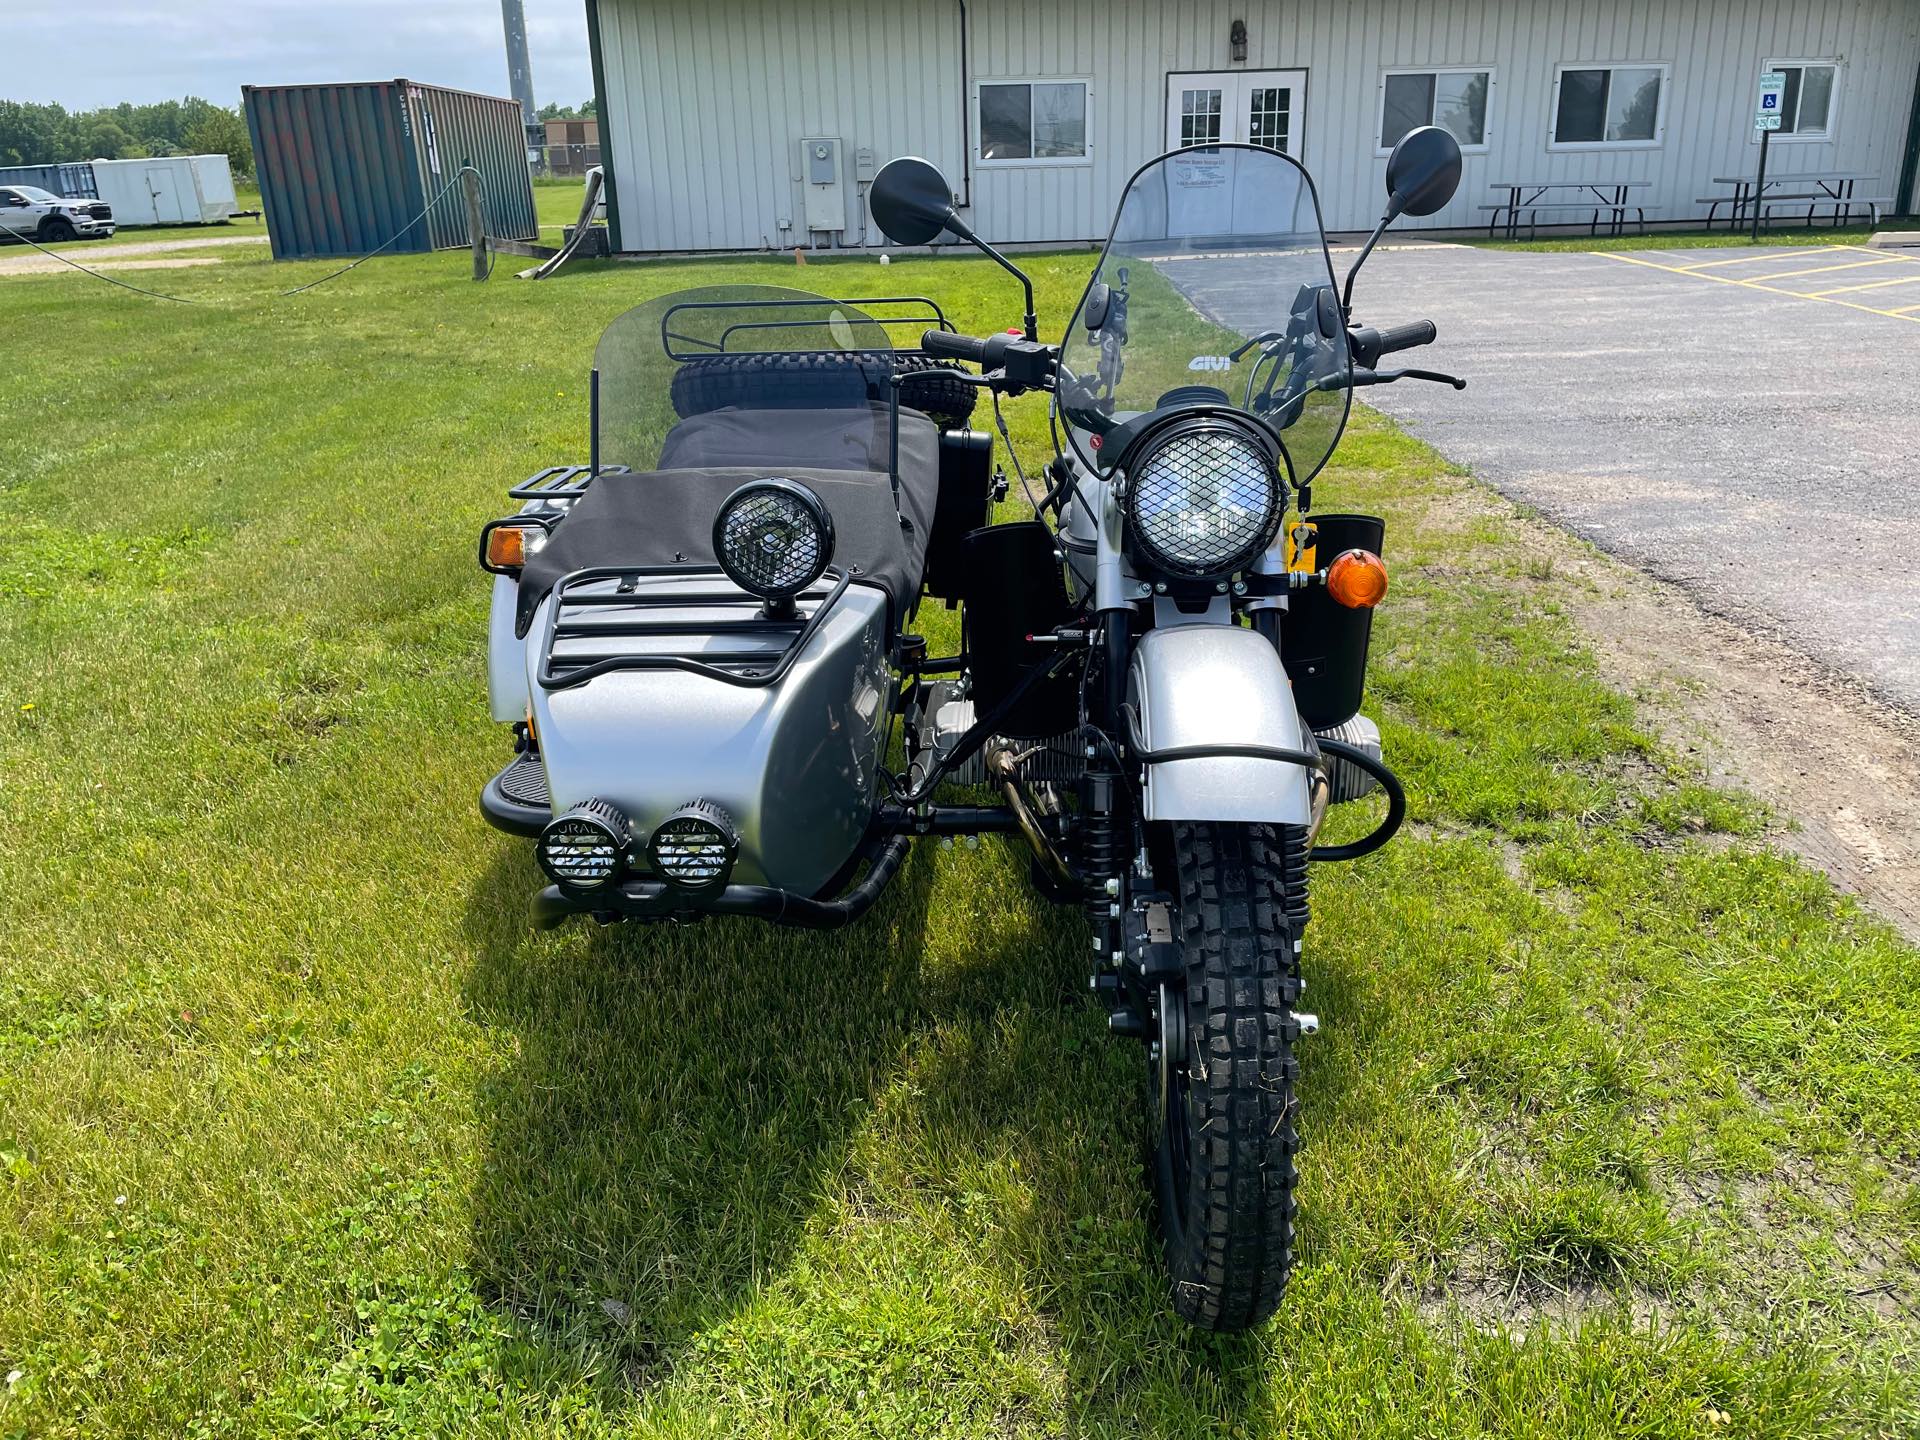 2019 Ural Gear-Up 750 at Randy's Cycle